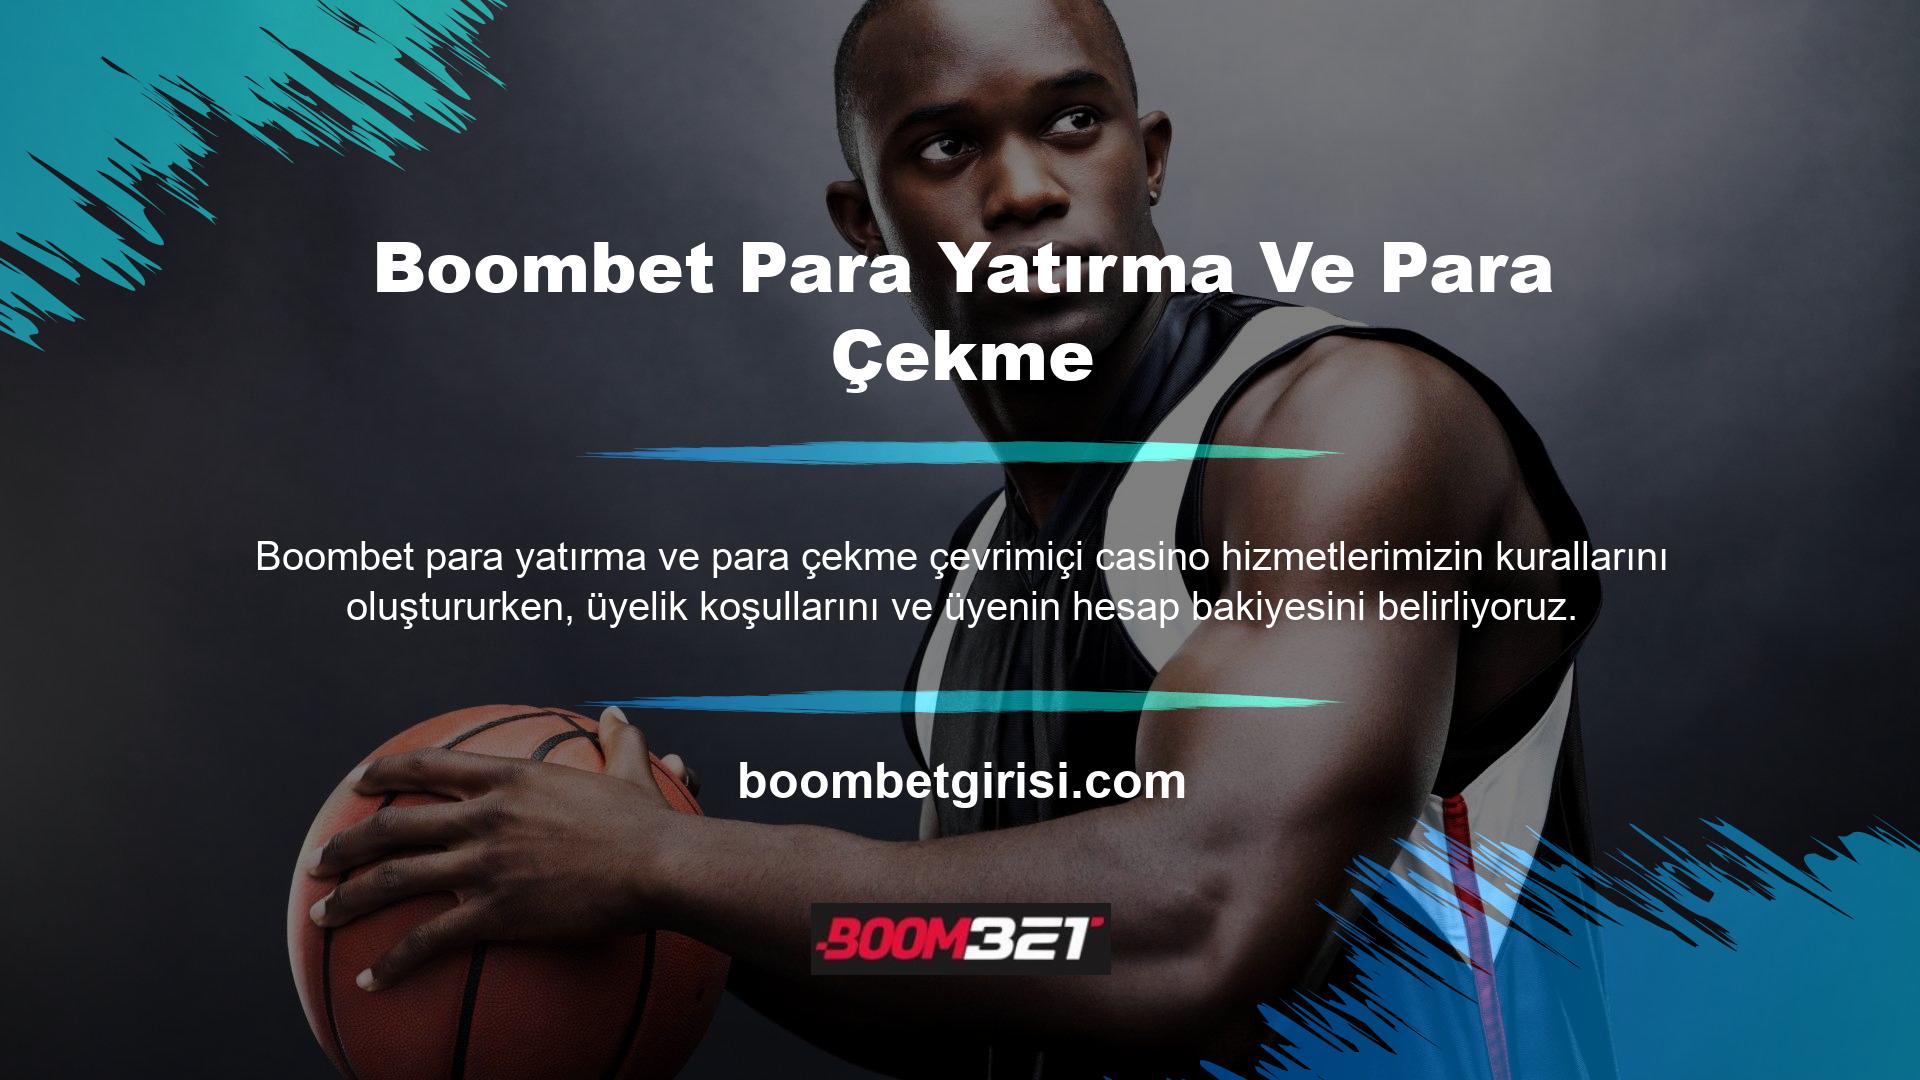 Boombet online casino sitesinin tüm kullanıcıları sitenin para yatırma yöntemlerini kullanarak yatırım yapabilirler